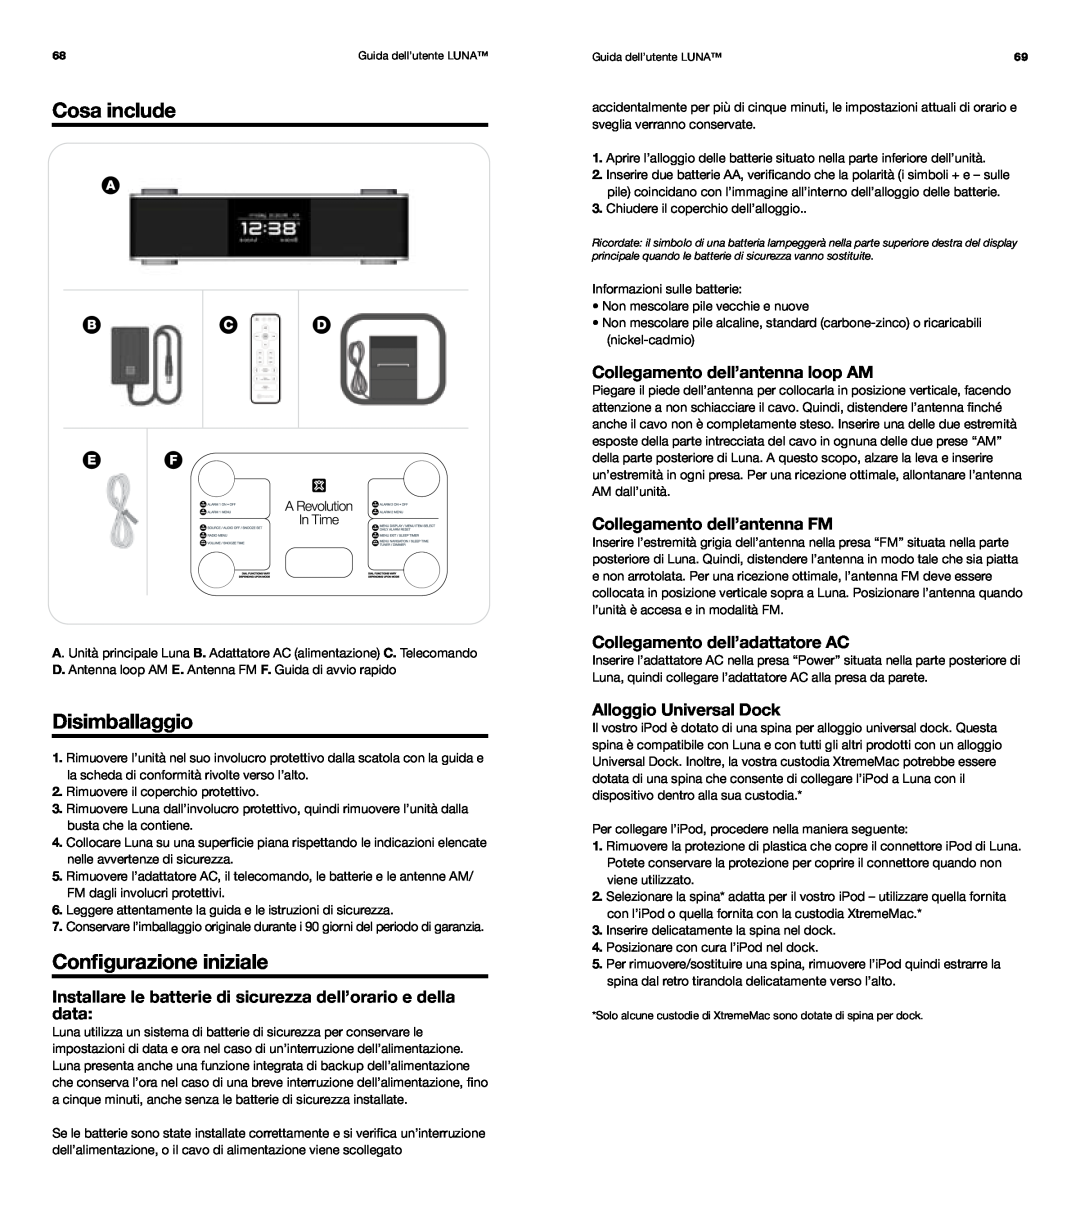 XtremeMac Room Audio System Cosa include, Disimballaggio, Configurazione iniziale, Collegamento dell’antenna loop AM 